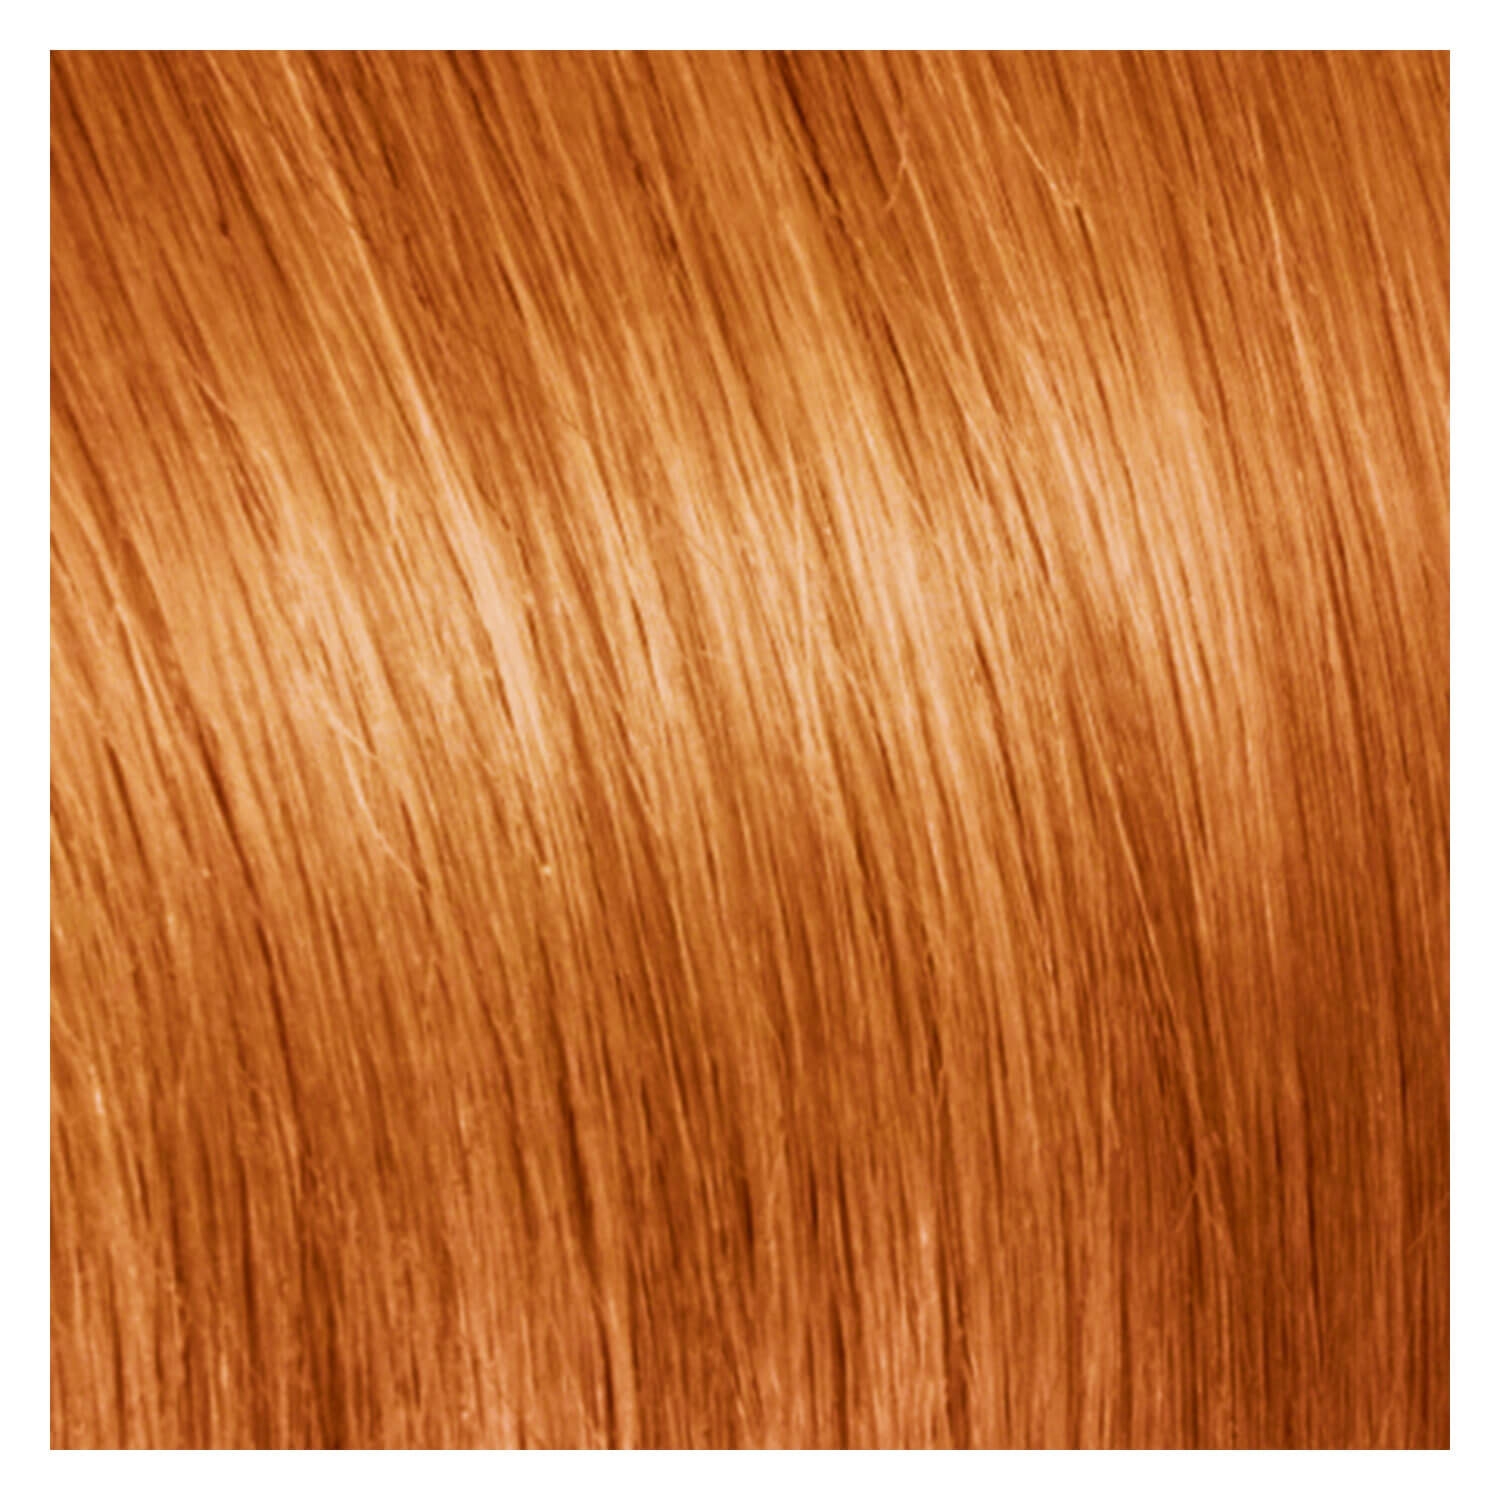 Produktbild von SHE Clip In-System Hair Extensions - Orange 40cm